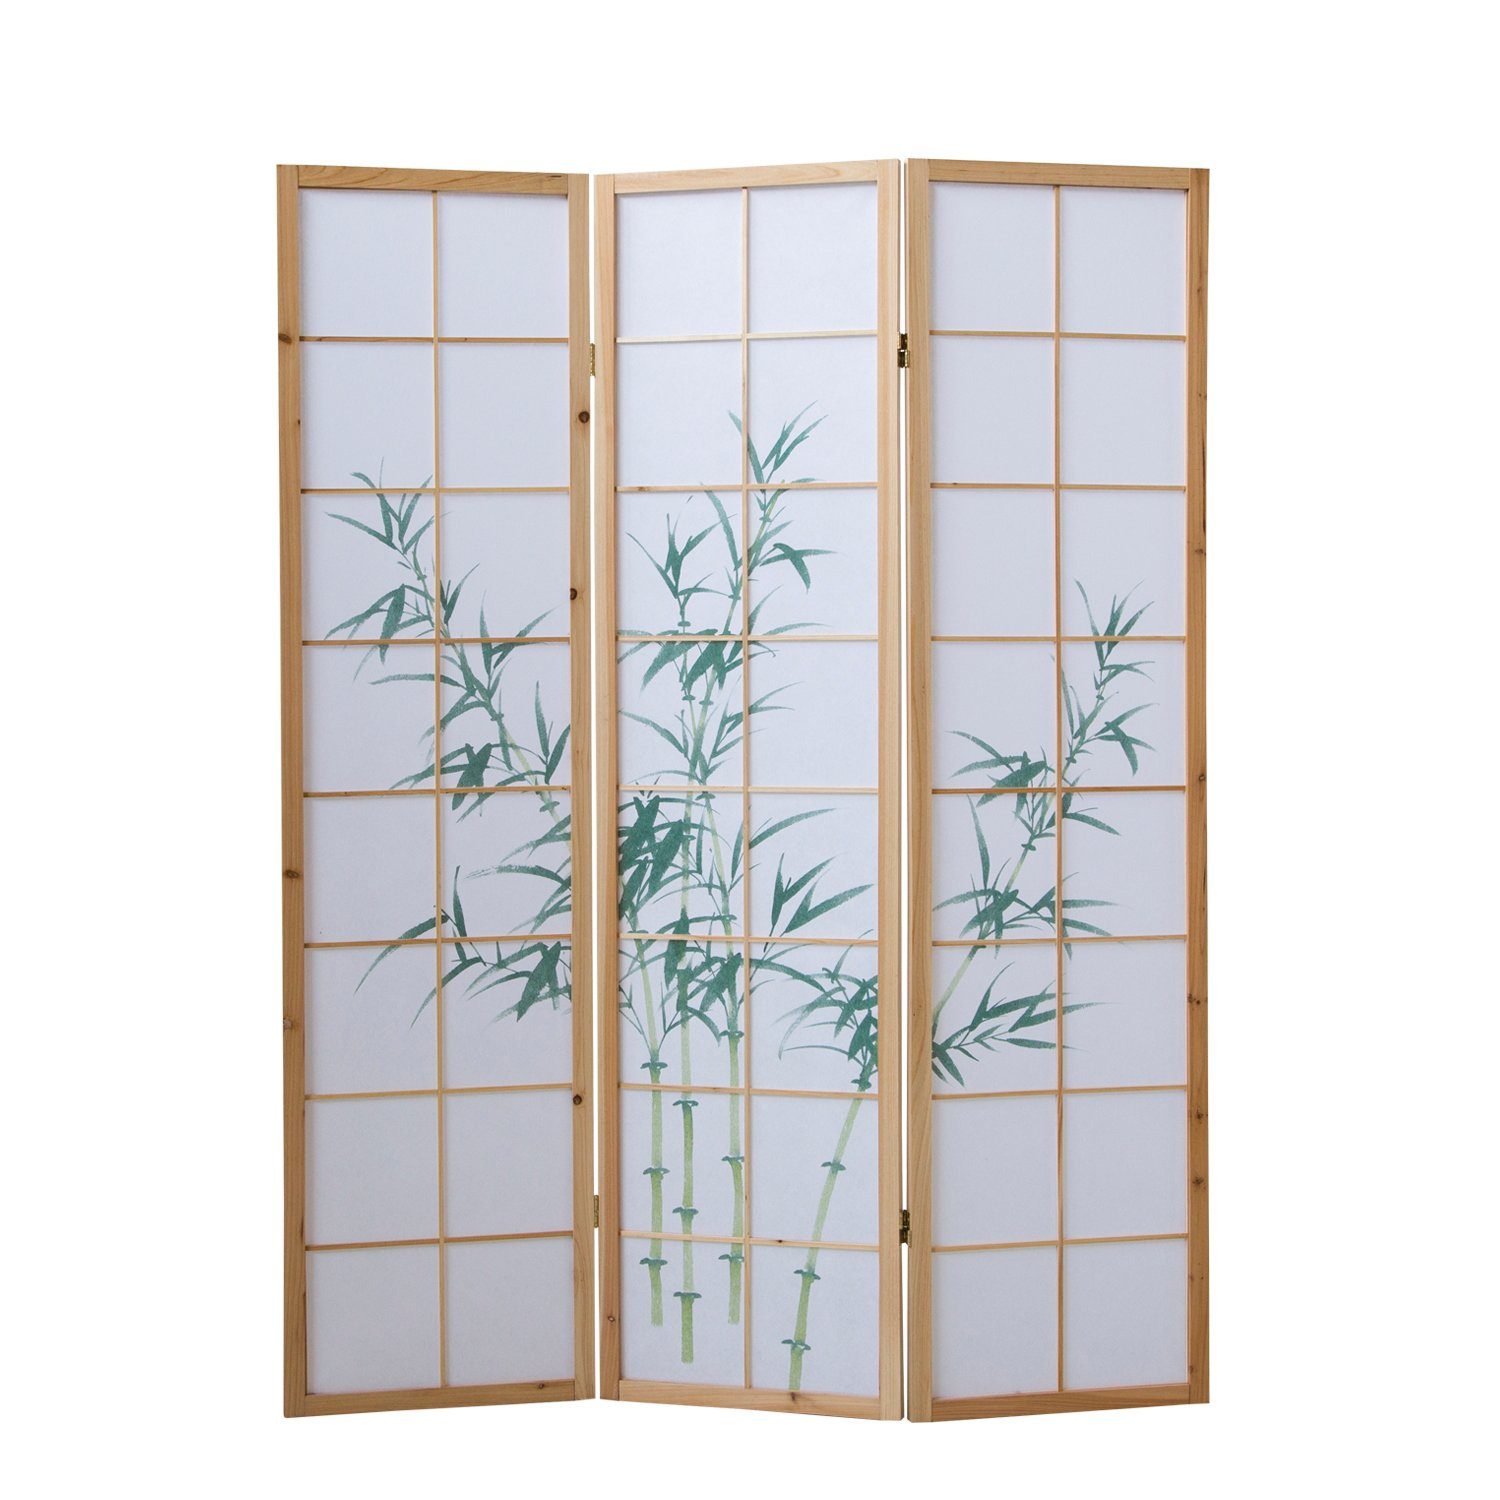 Homestyle4u Paravent Raumteiler Trennwand Bambusmuster Natur Sichtschutz Indoor Holz faltba, 3-teilig